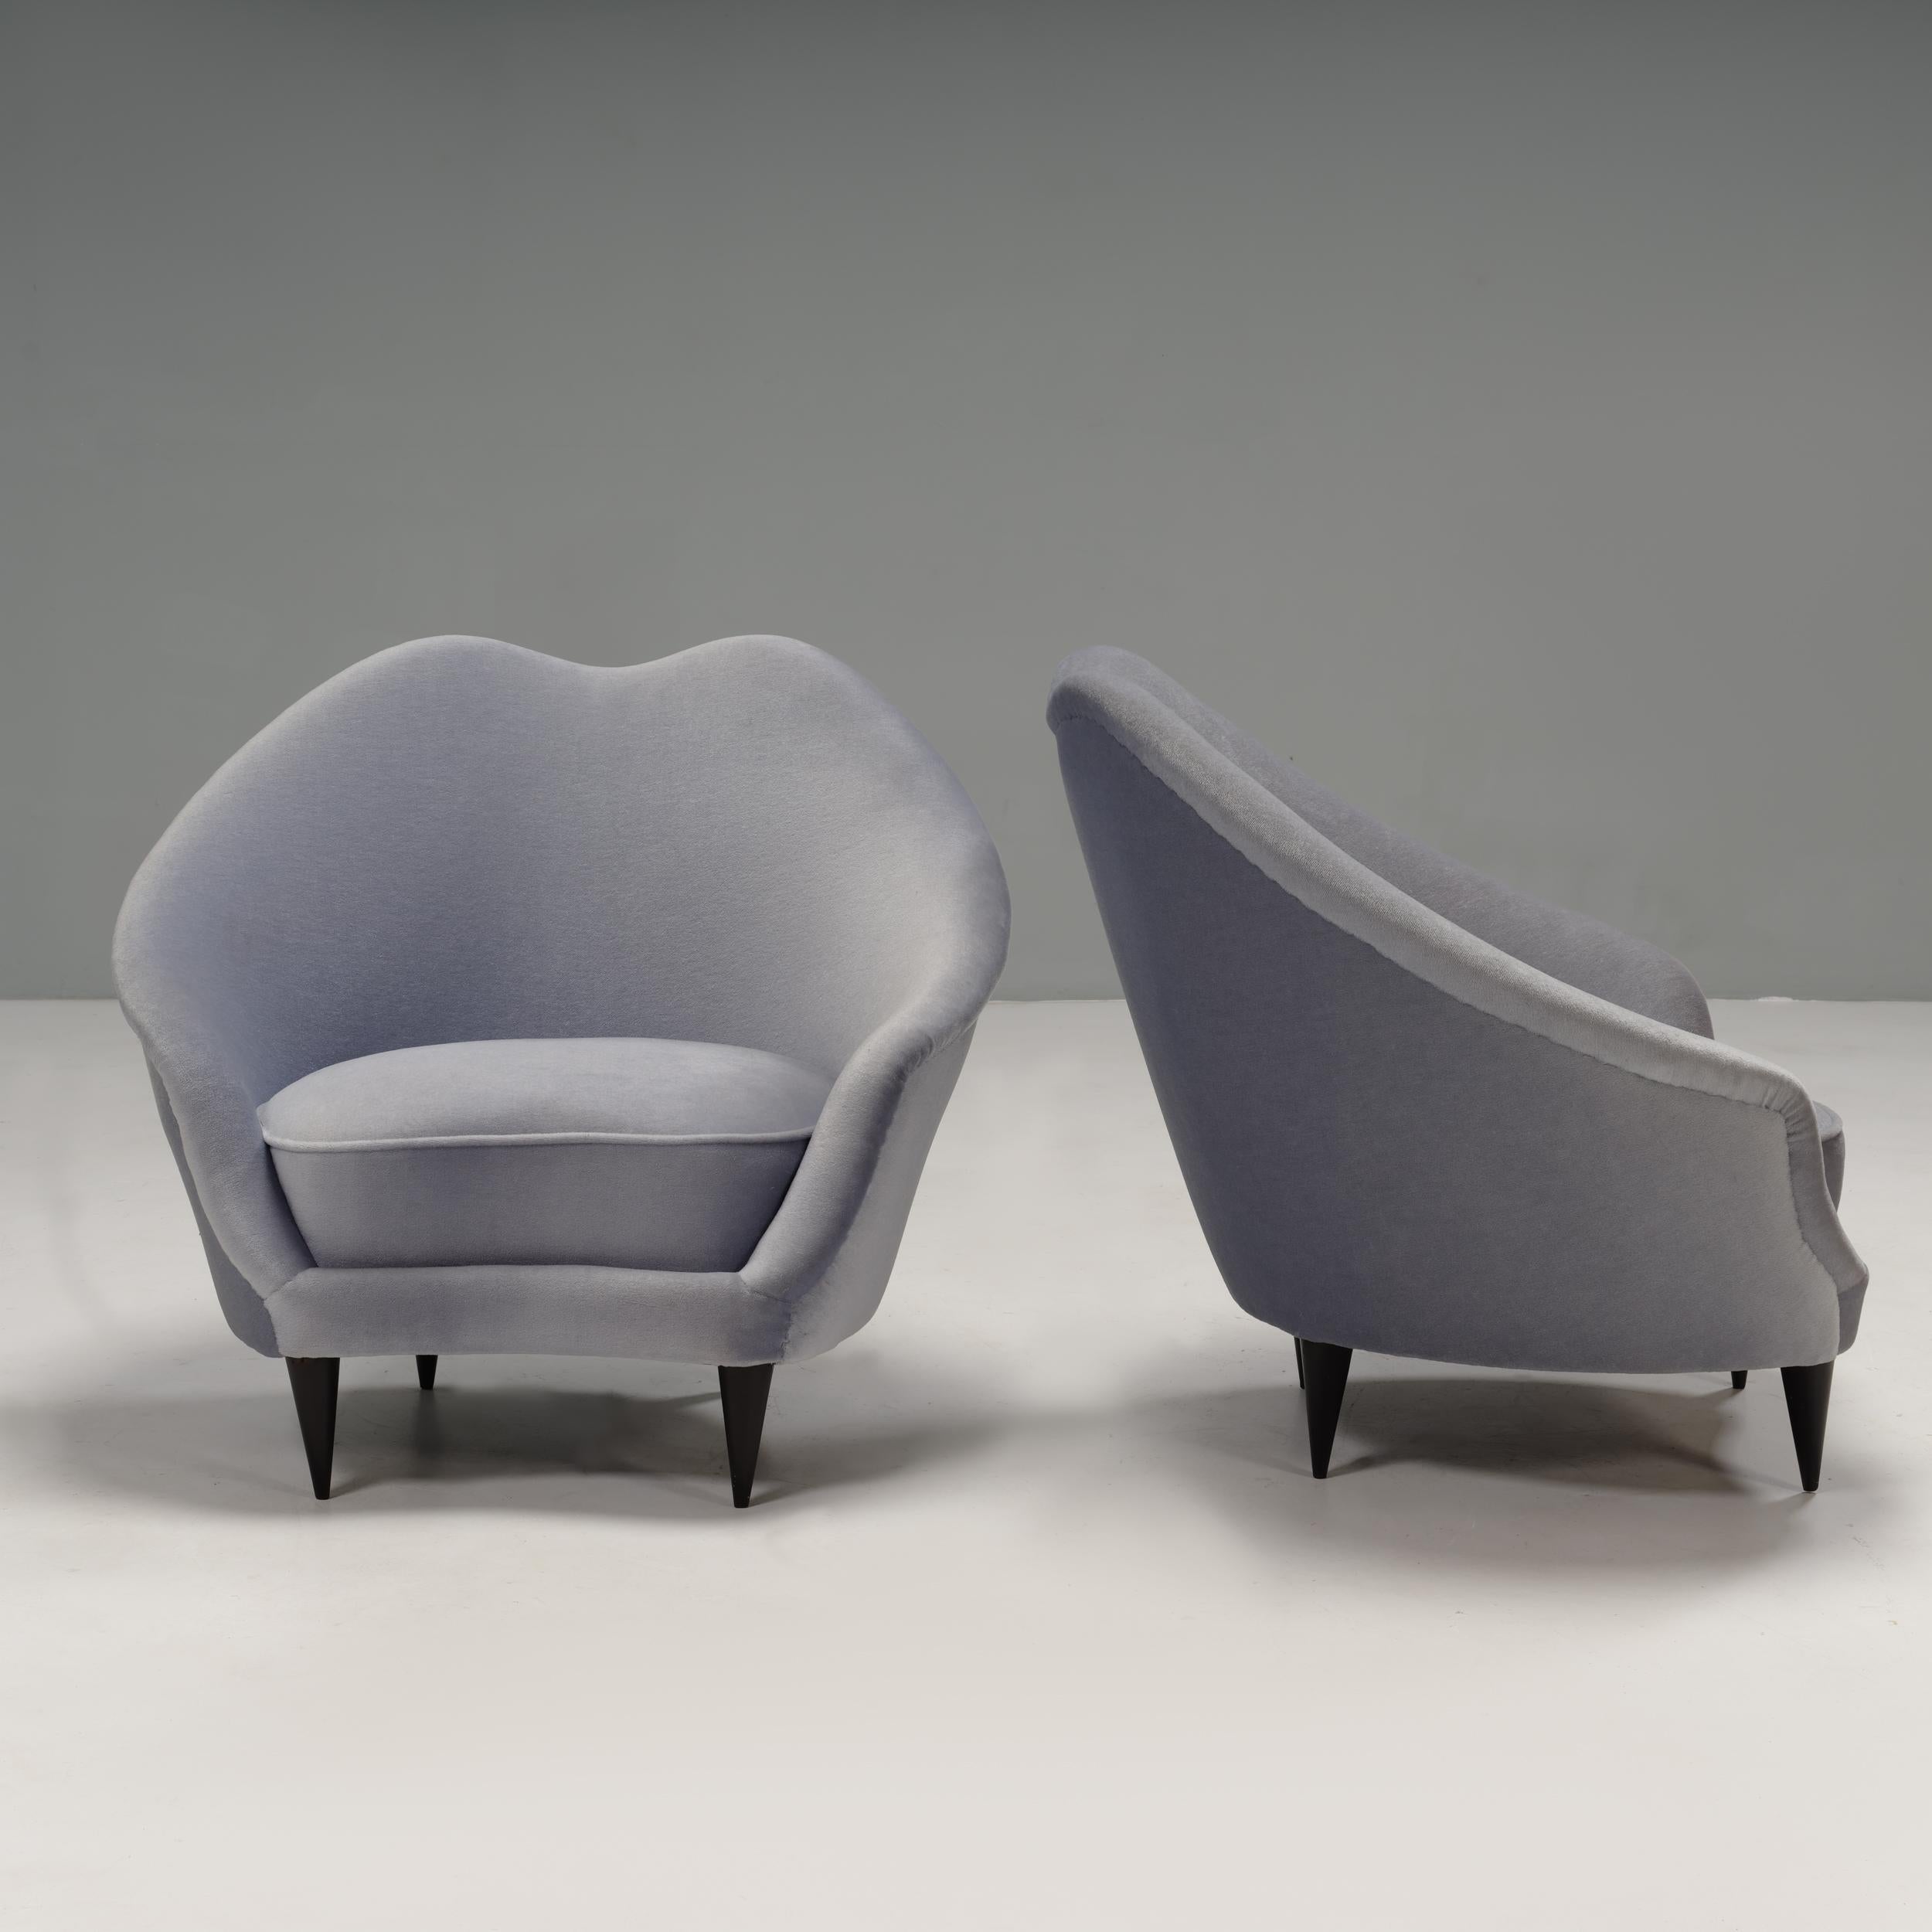 Exemple étonnant du design italien classique des années 1950, ces chaises à cocktail ont été conçues par Ico Parisi.

Les fauteuils présentent une forme sculpturale avec un coussin d'assise incurvé et un dossier incliné.

Les deux chaises sont